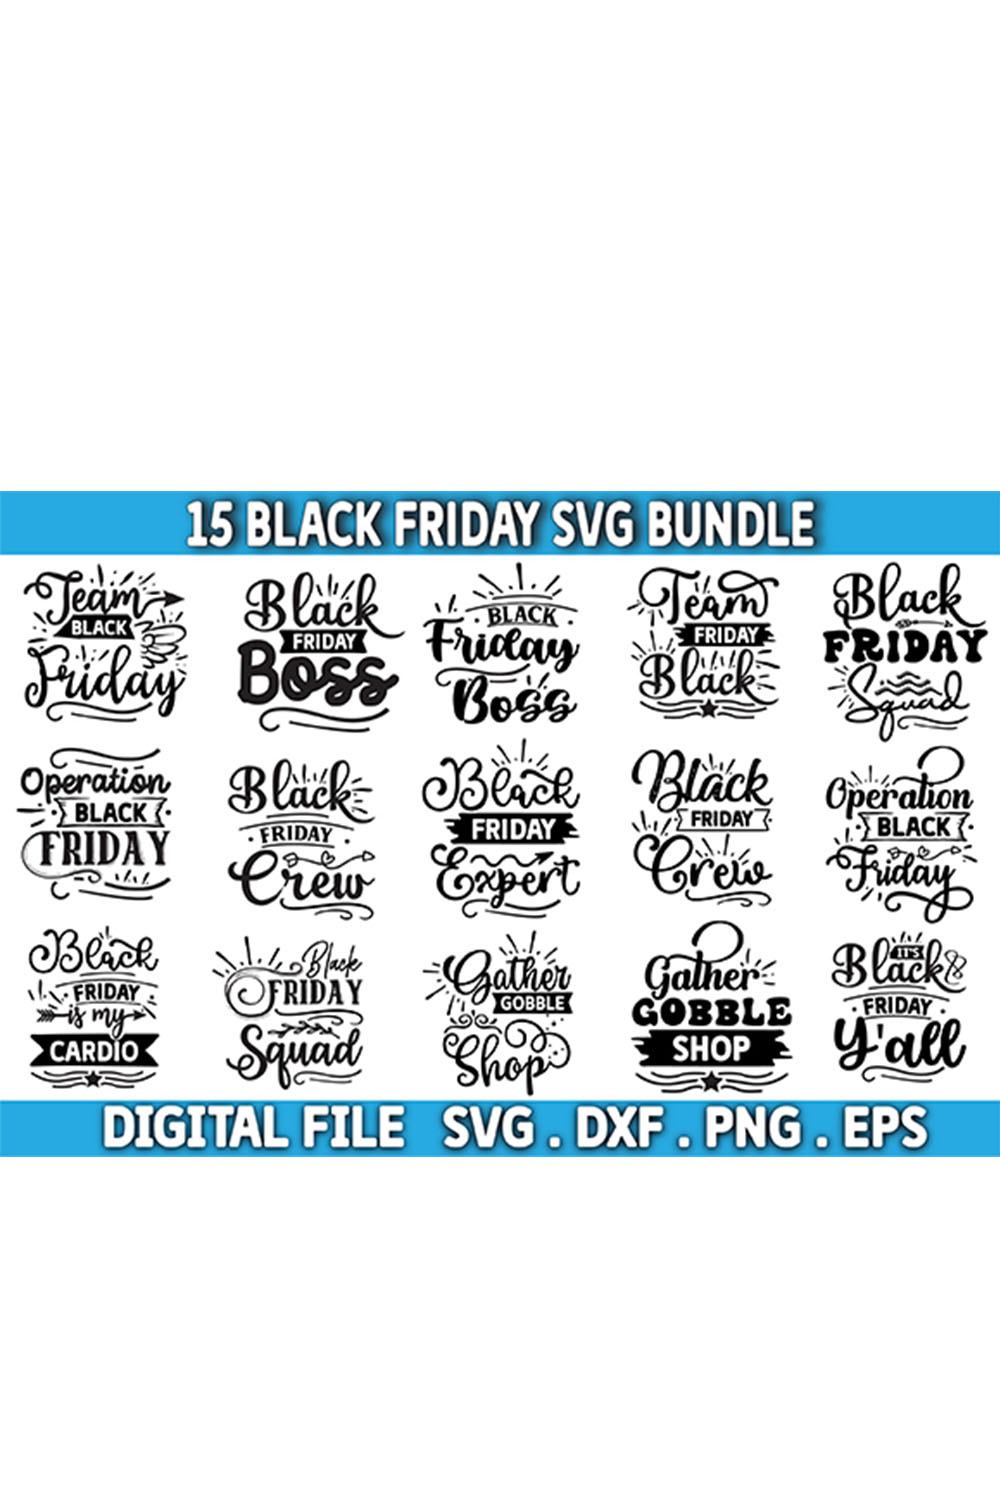 black Friday svg bundle , black Friday svg design pinterest preview image.